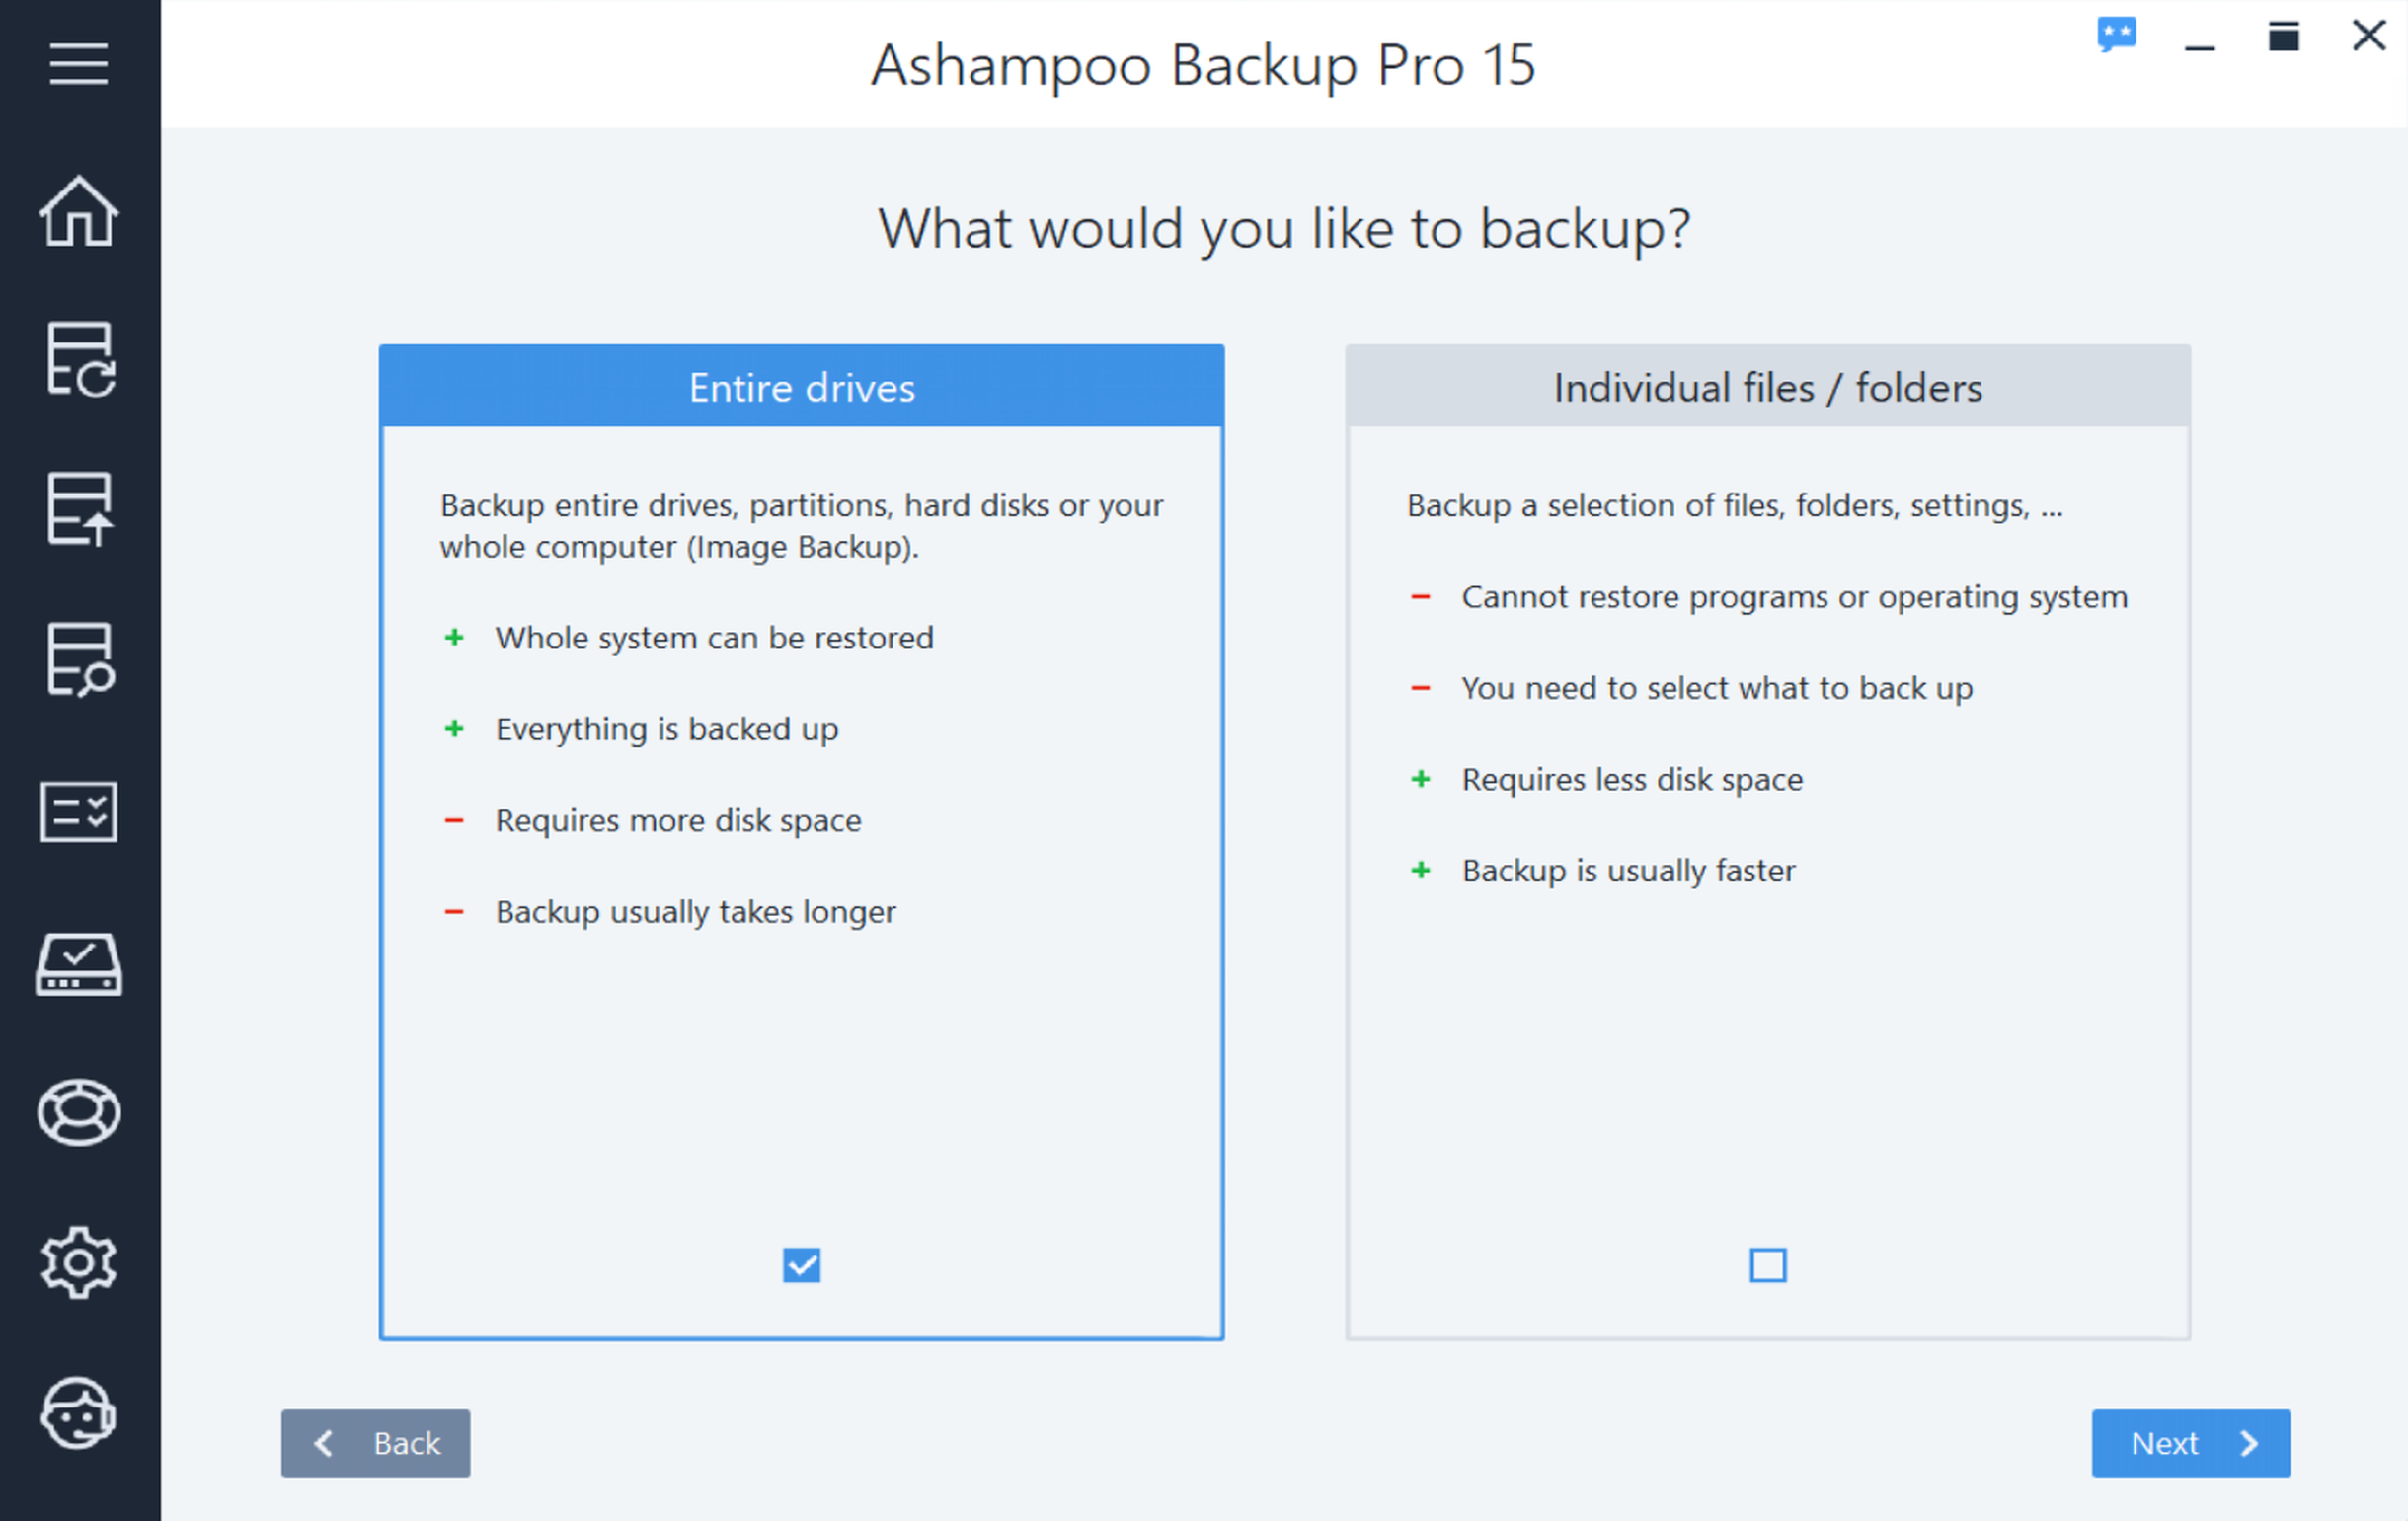 Ashampoo Backup Pro 15 Activation Key